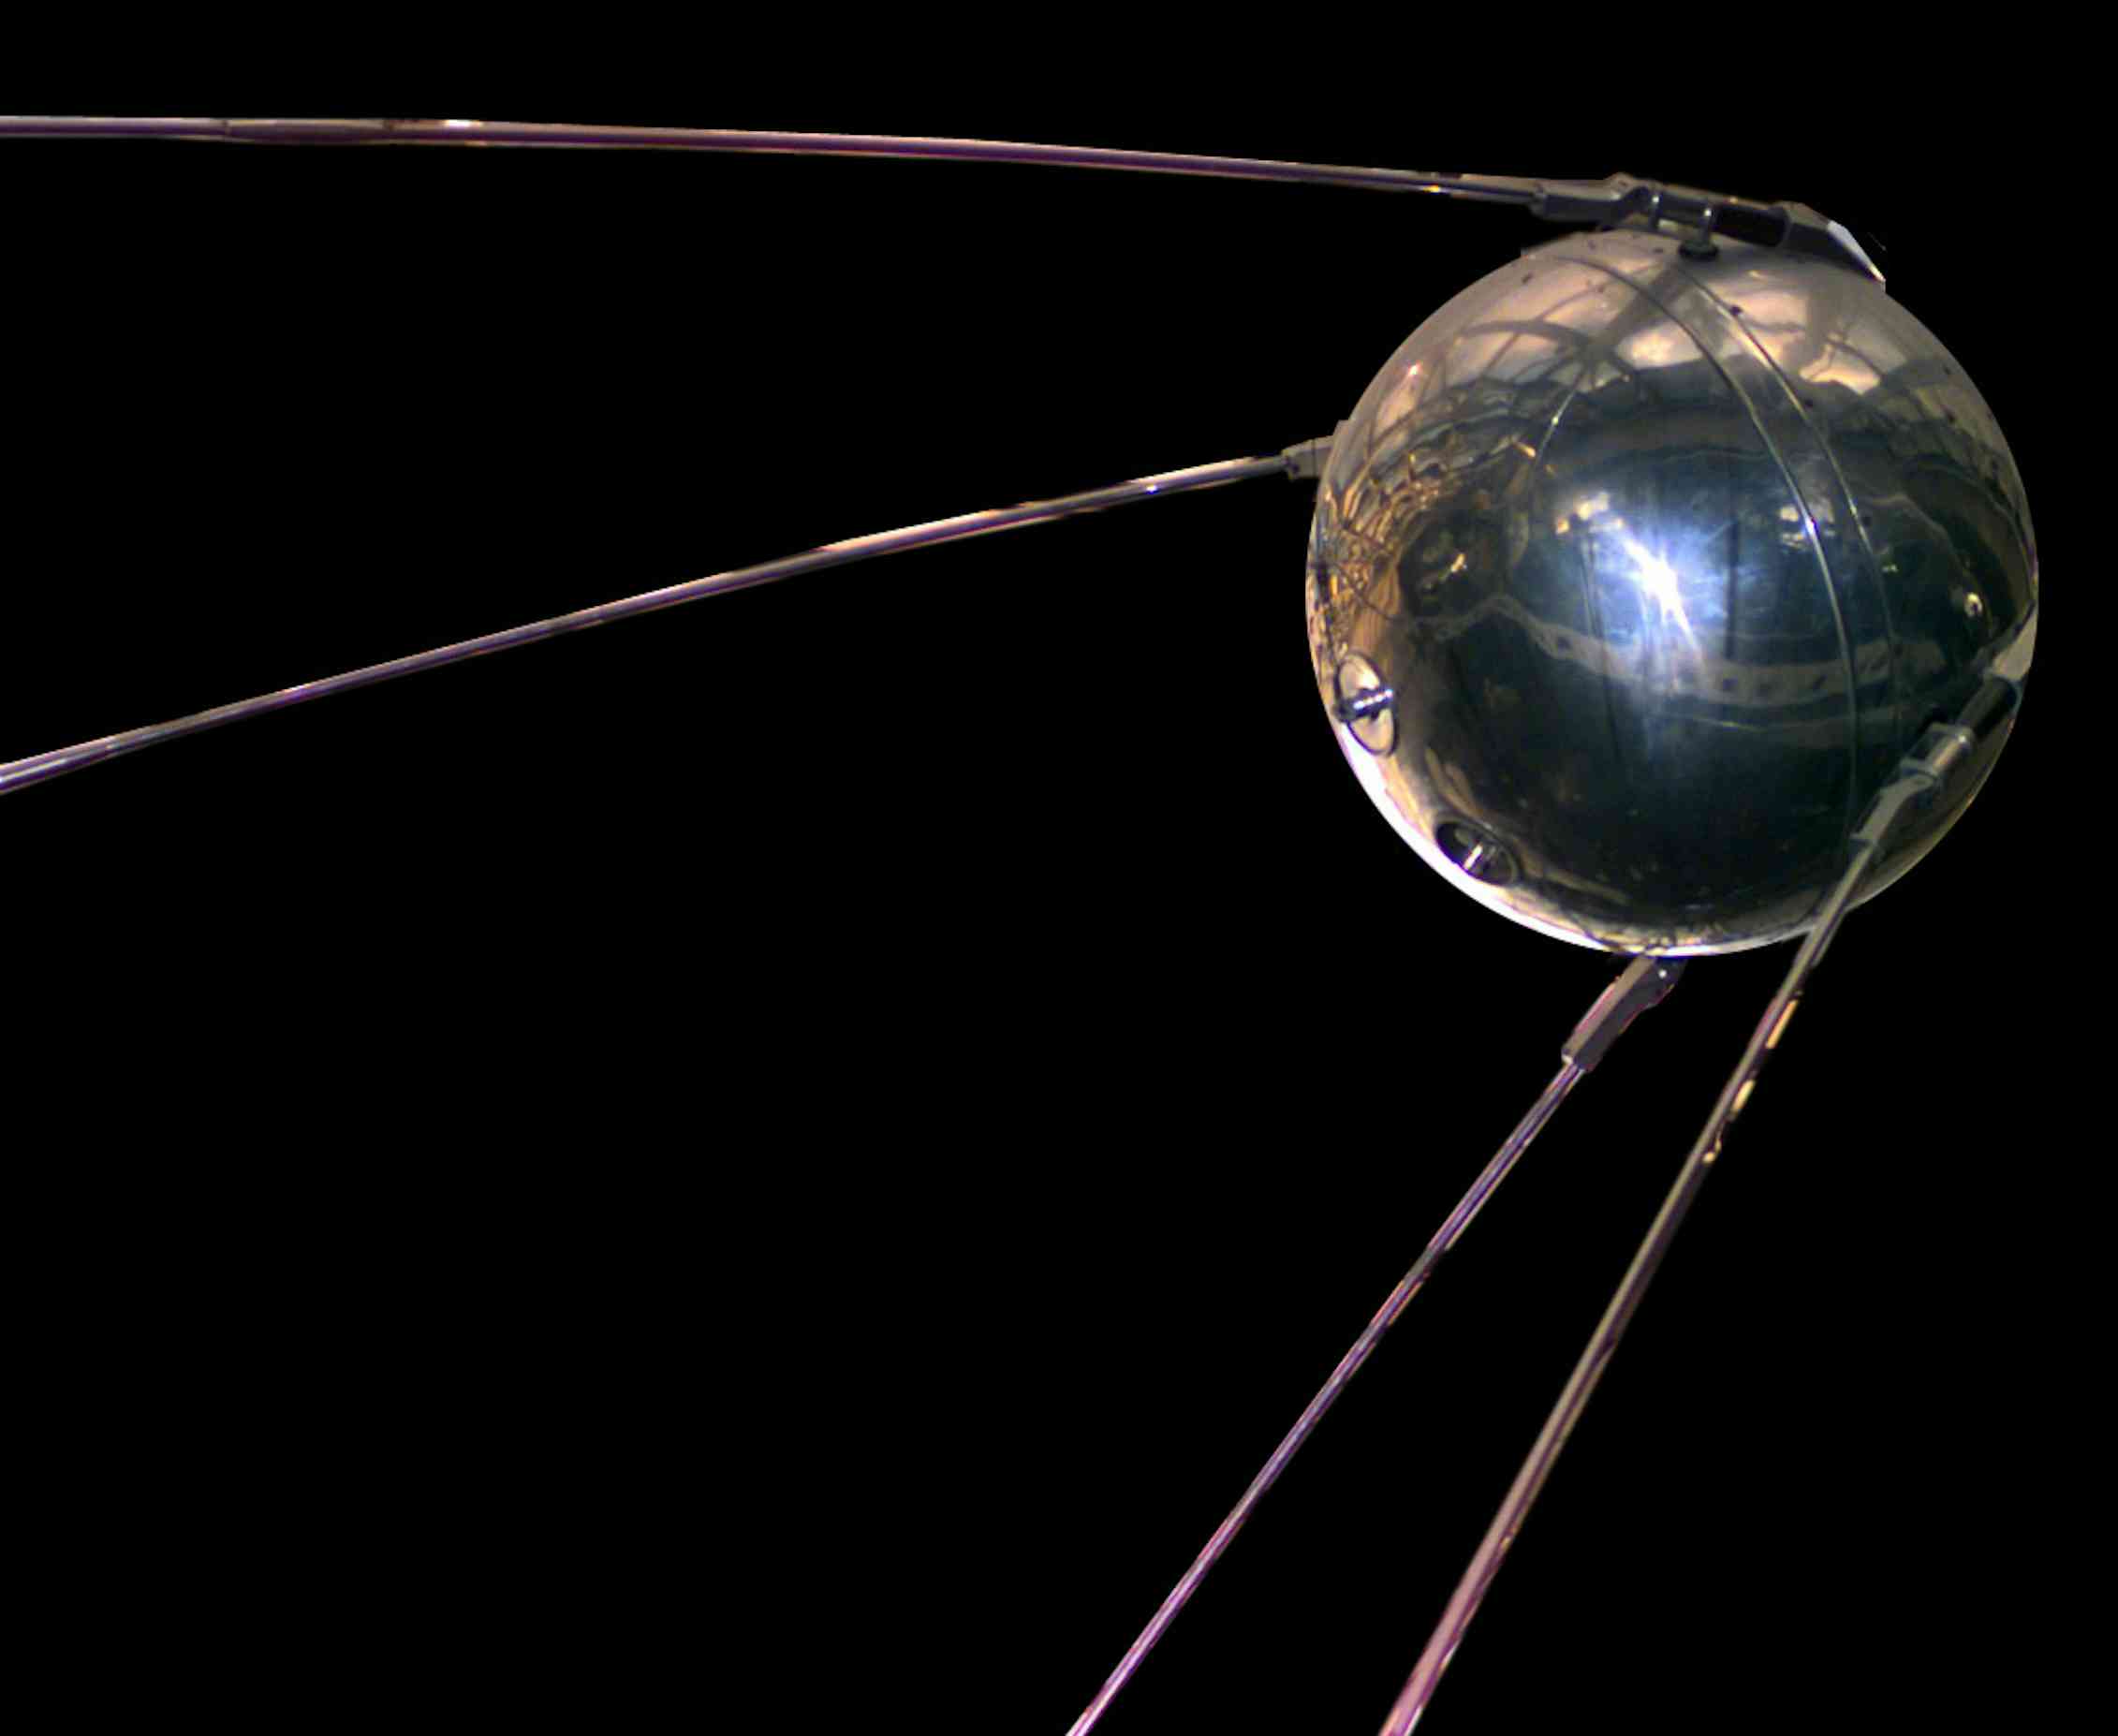 Réplica del satélite artificial Sputnik 1. Nasa